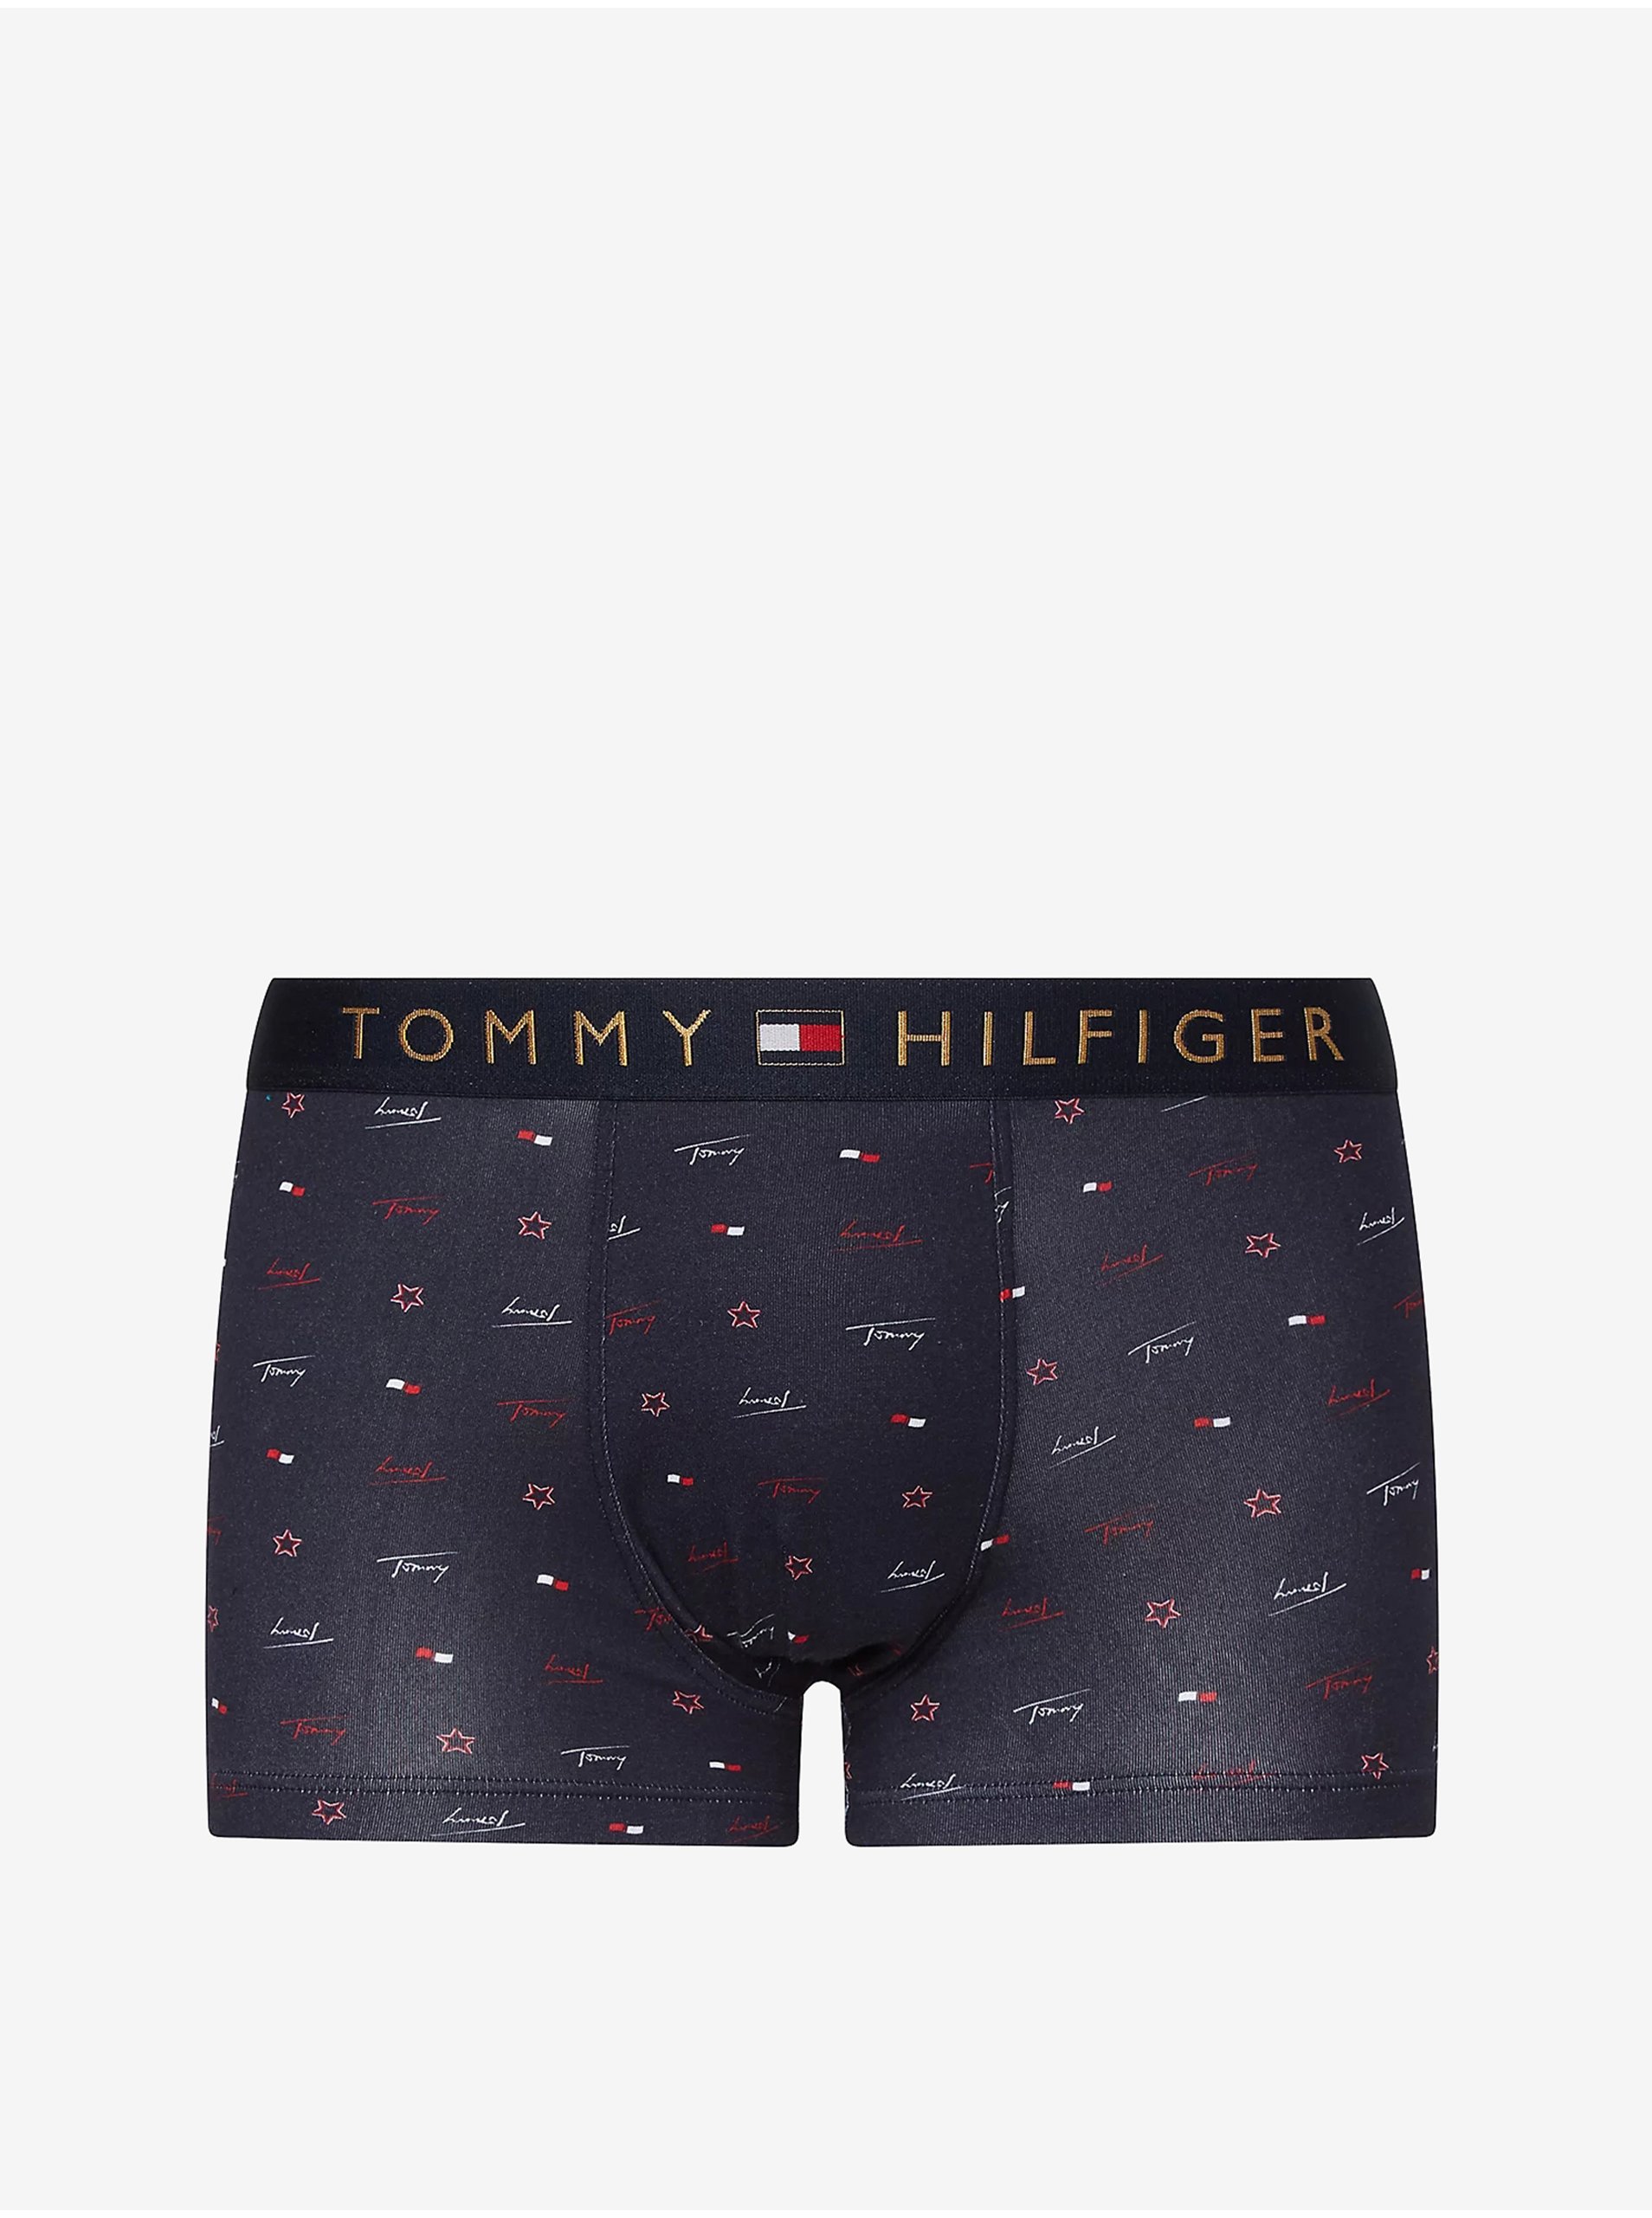 E-shop Sada modrých pánskych vzorovaných boxeriek a ponožiek Tommy Hilfiger